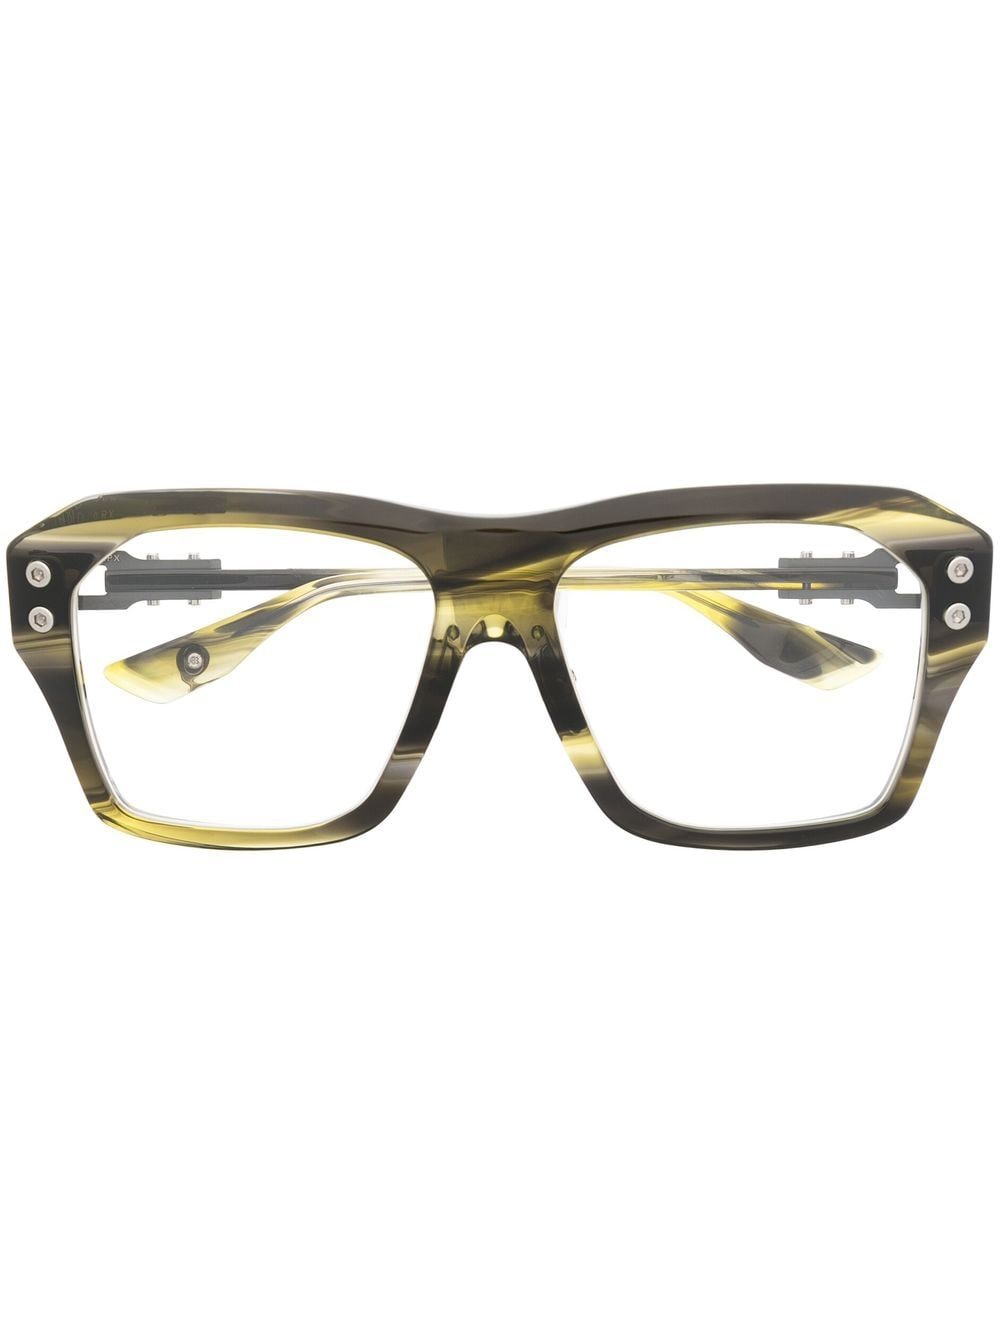 Dita Eyewear Grand-Apx square-frame glasses - Green von Dita Eyewear